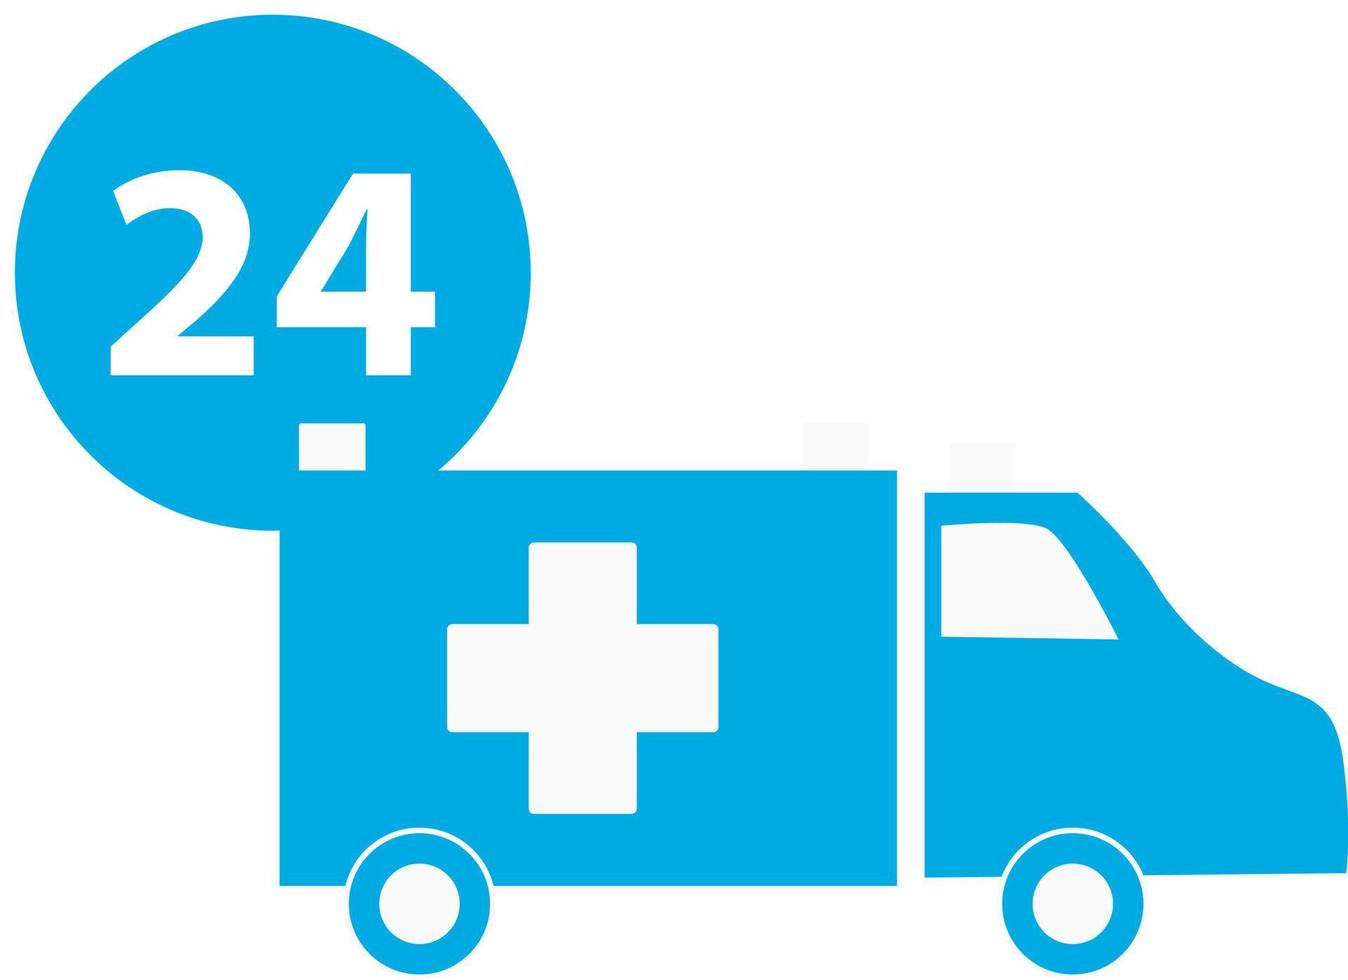 Blue ambulance icon, flat style on white background vector